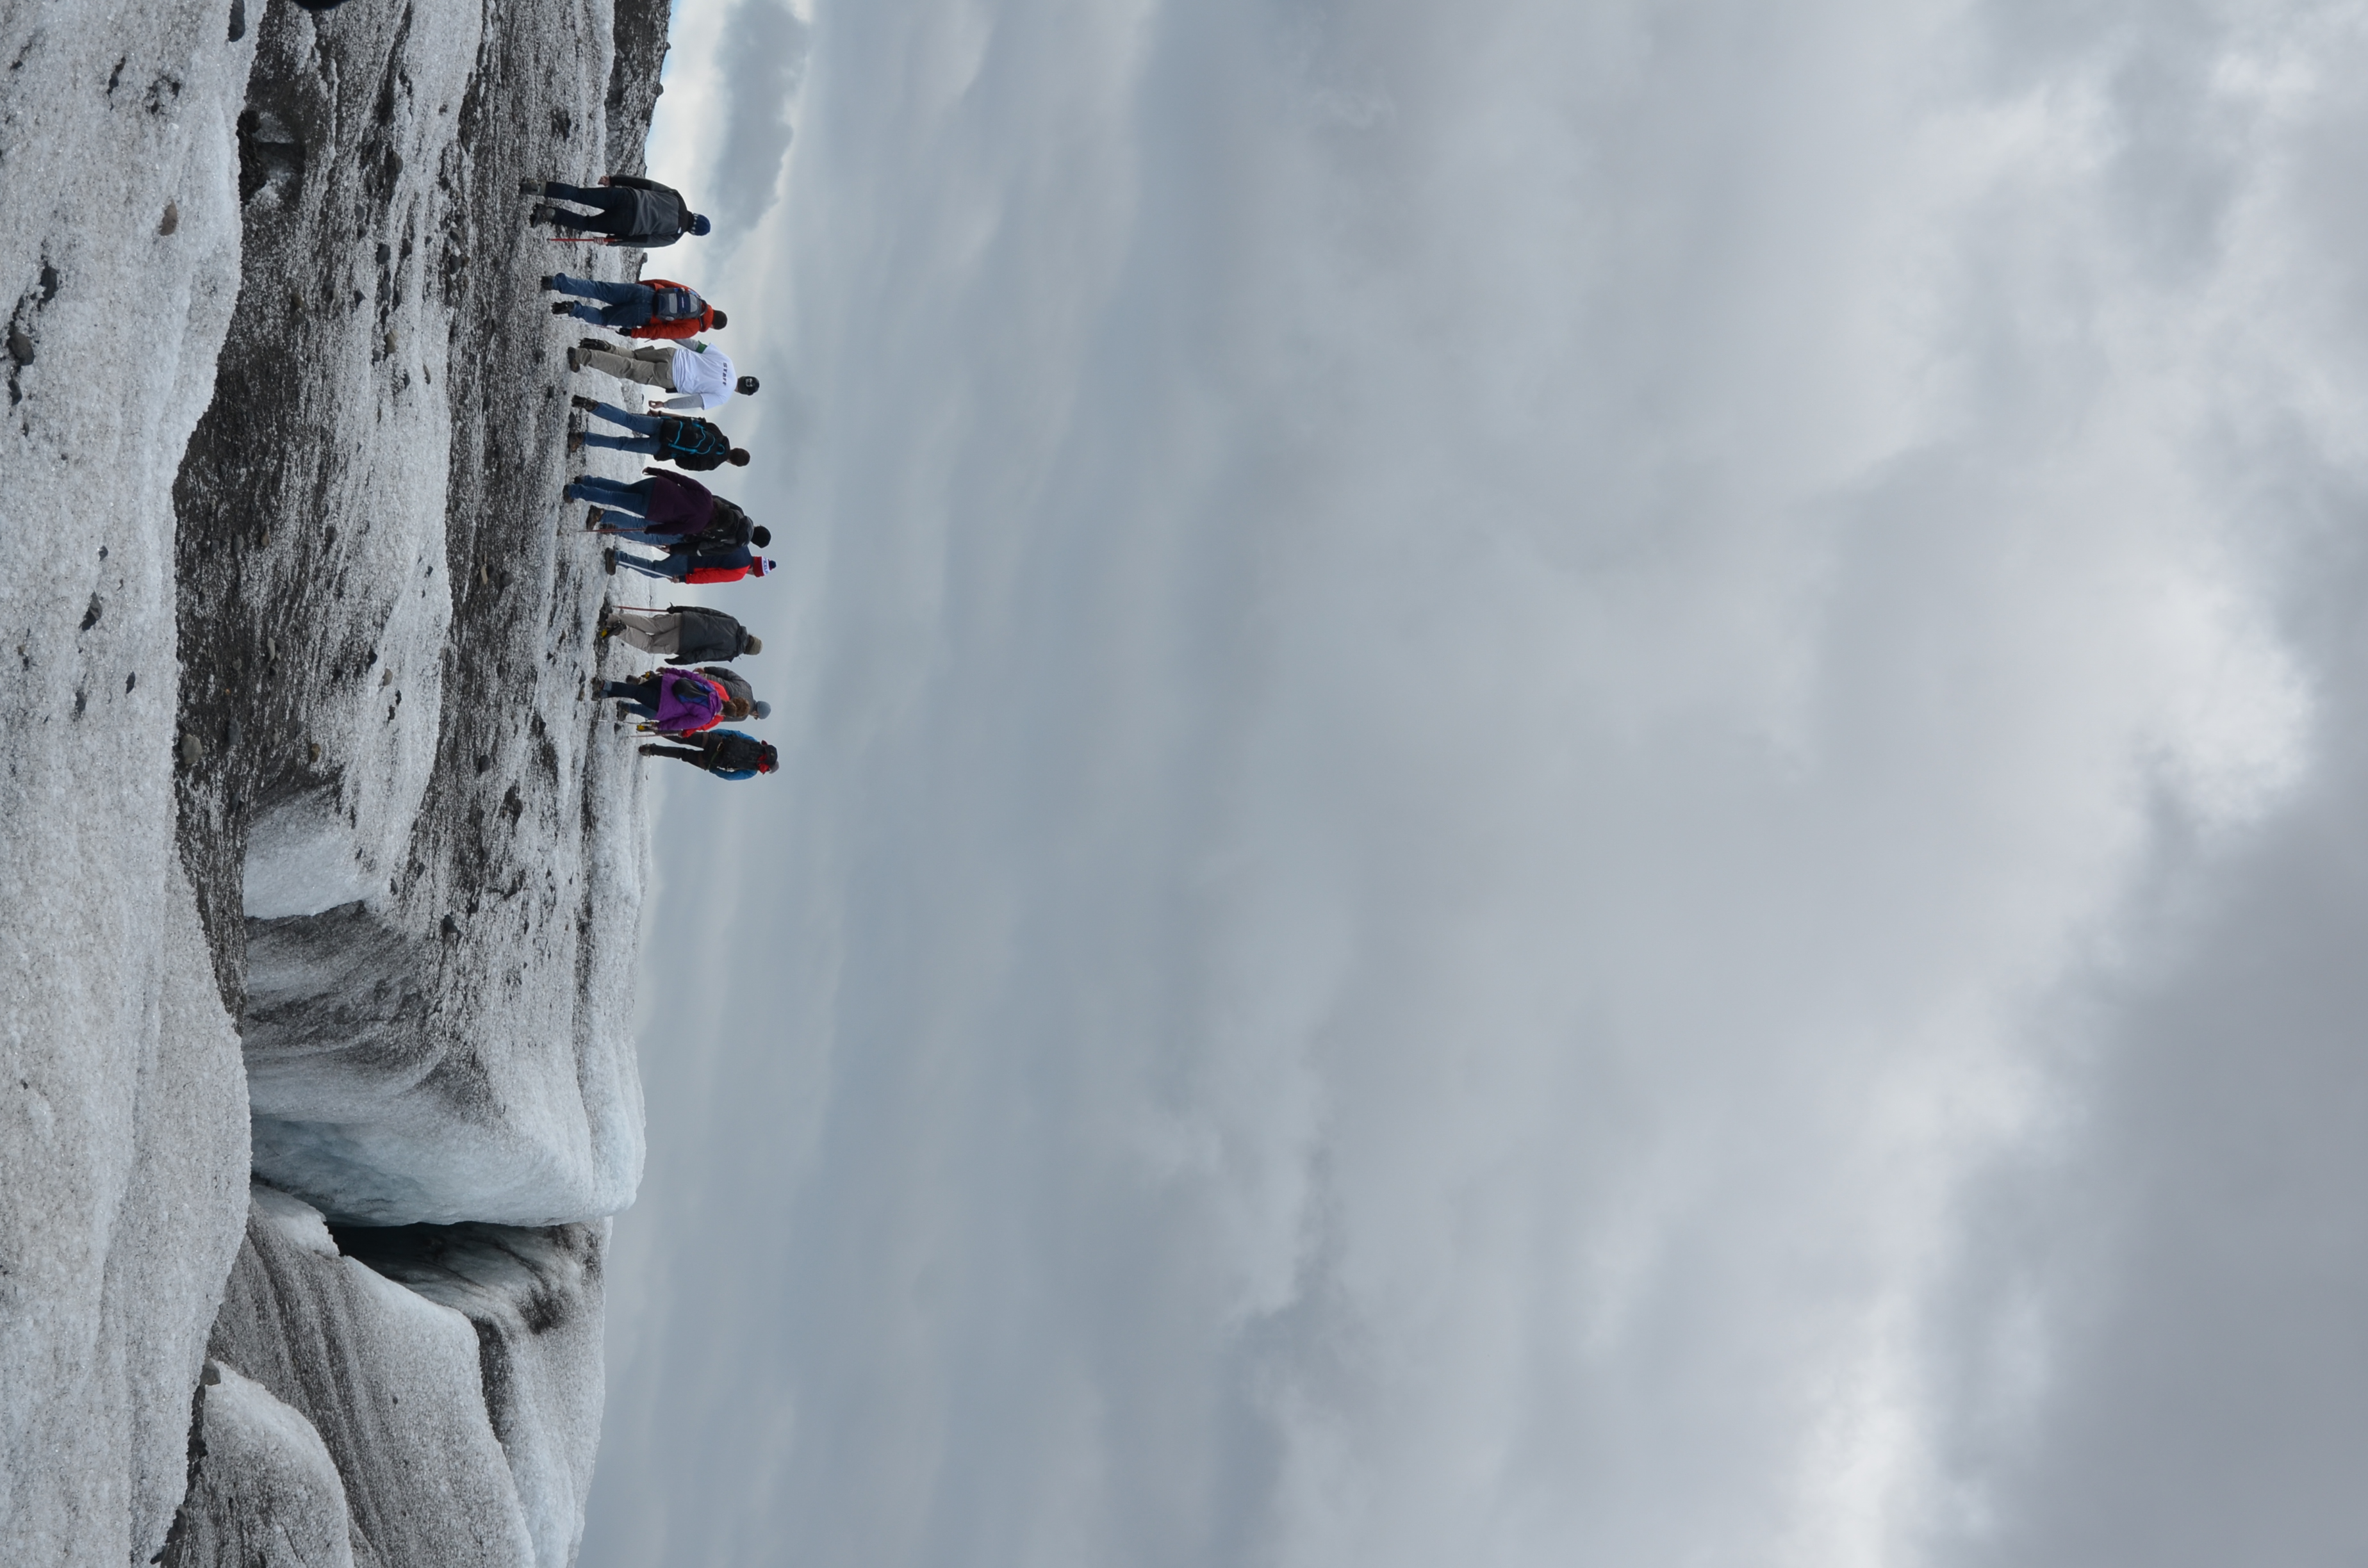 Students trekking in icy terrain